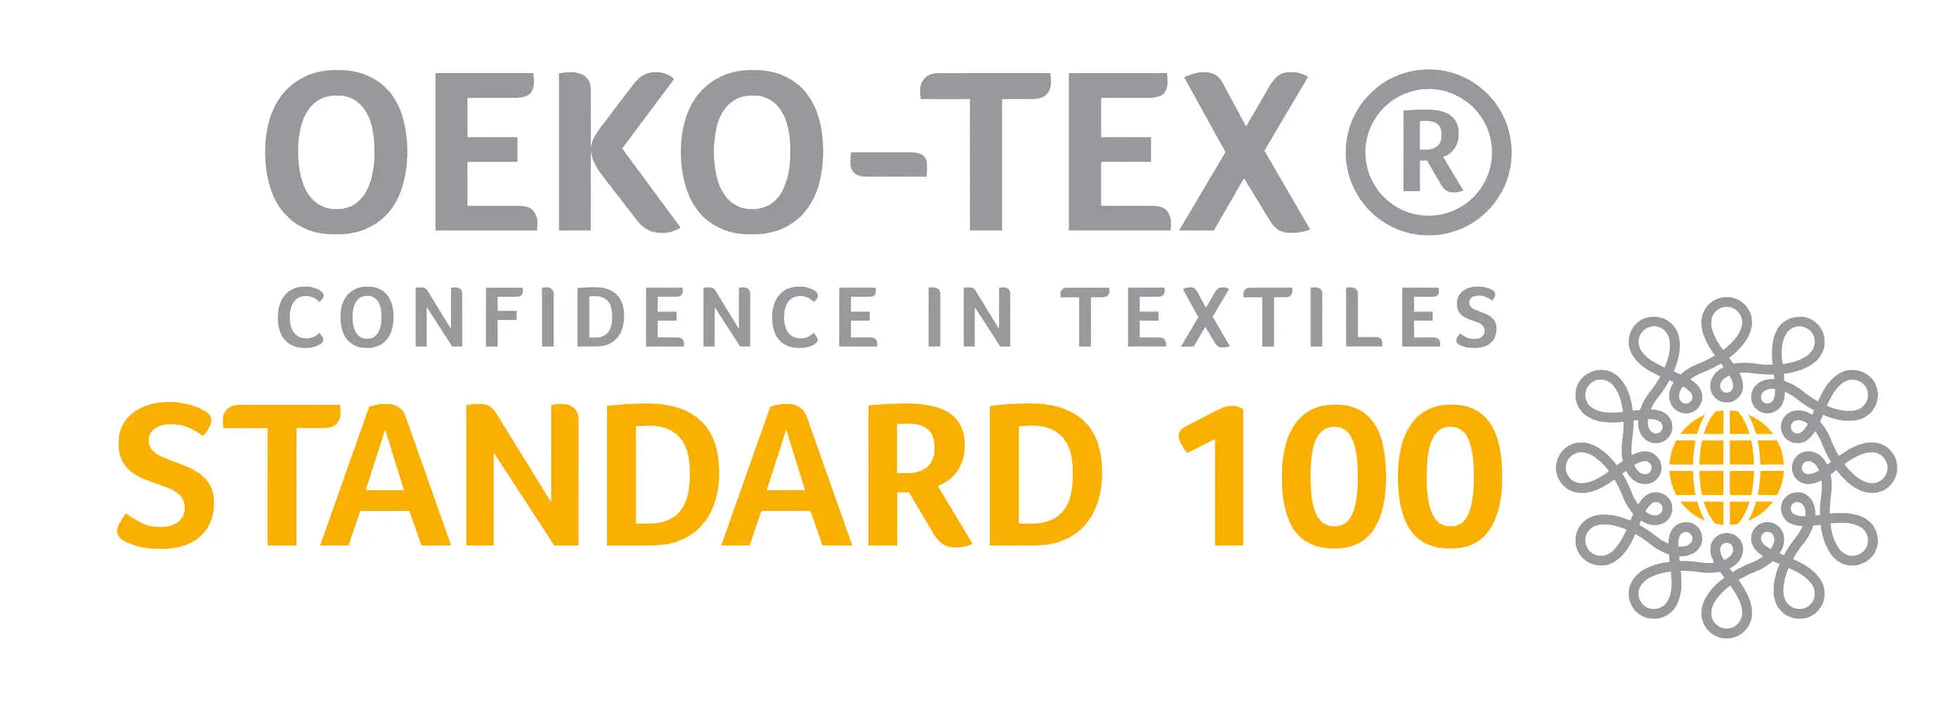 Certificazione ufficiale OEKO-TEX® https://www.oeko-tex.com/en/ OEKO-TEX® significa affidamento sui tessuti; garantisce che nei loro prodotti non sono stati utilizzati prodotti chimici nocivi e coloranti allergenici